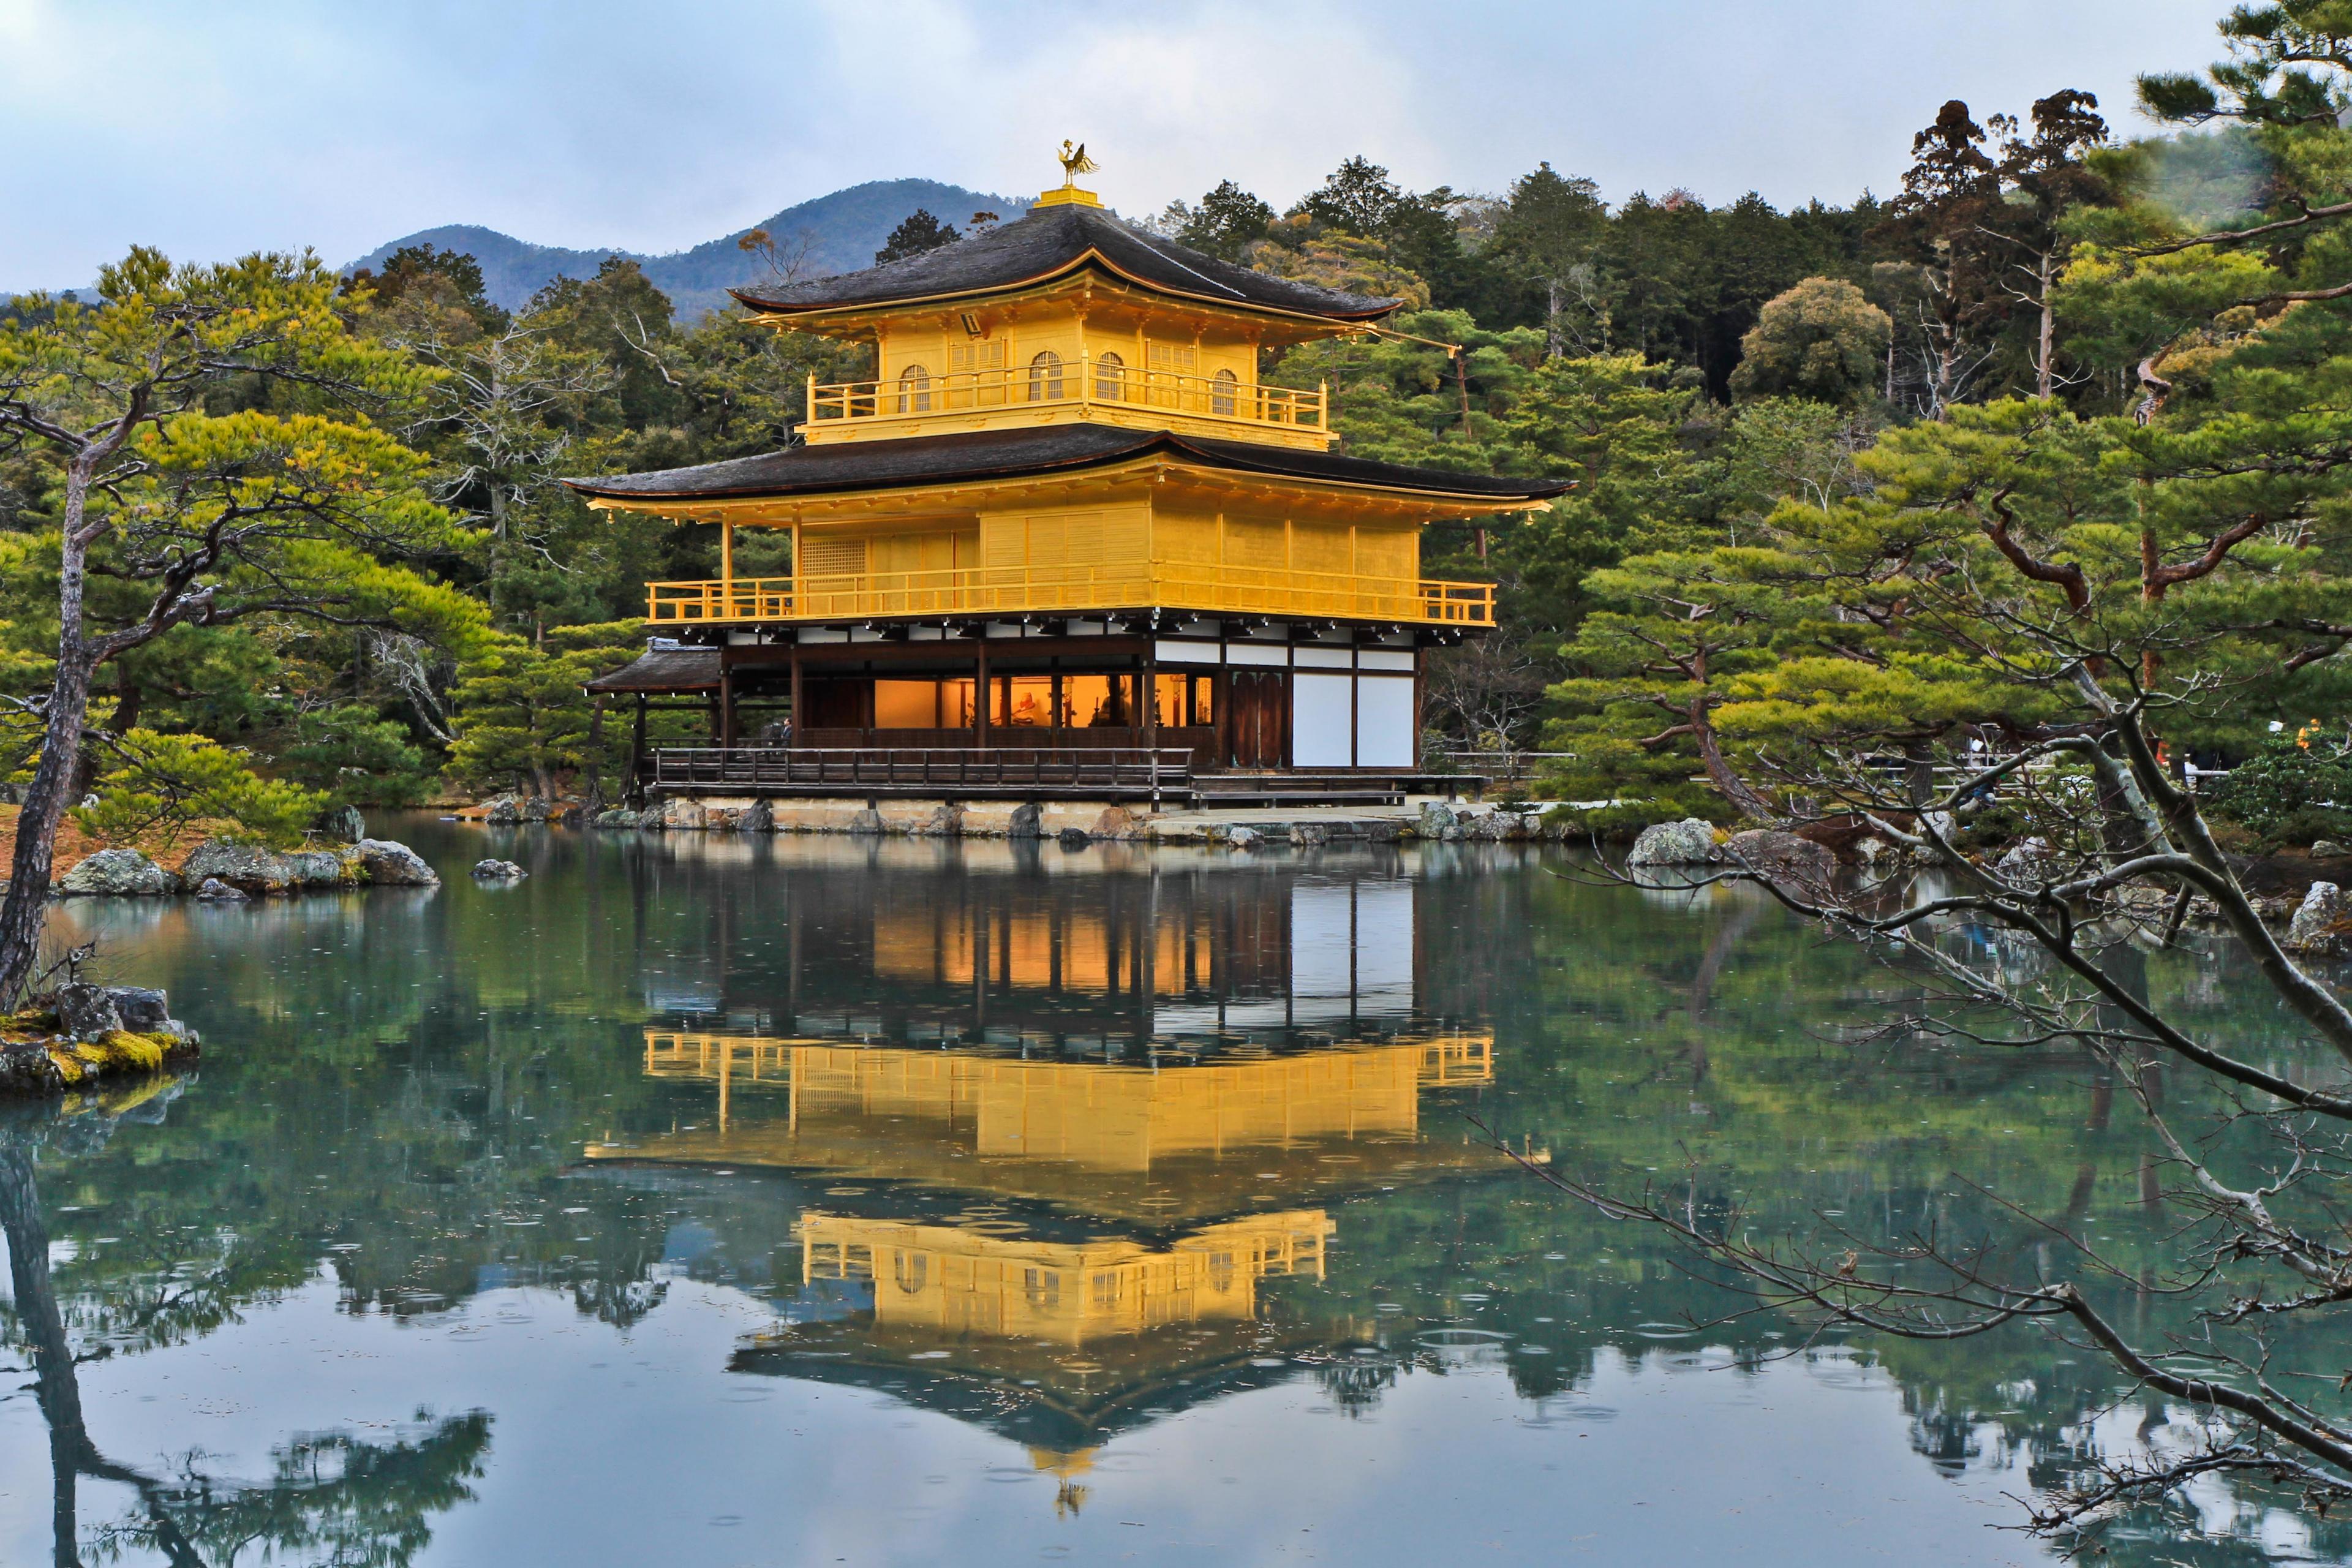 yellow pagoda on a pond